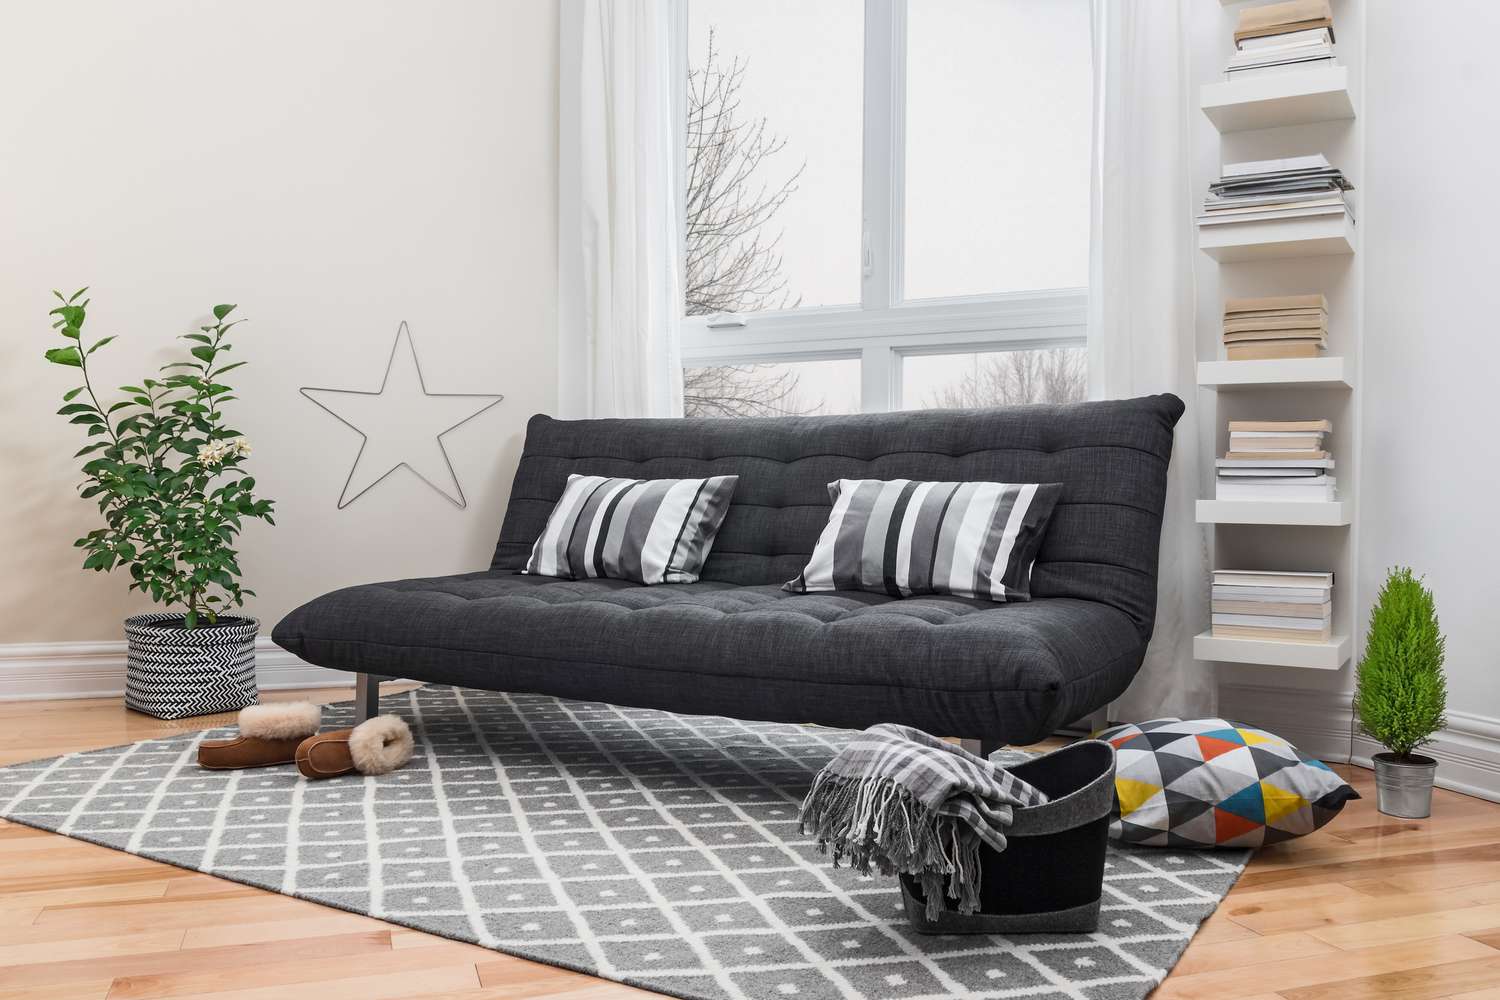 Futon cinza com almofadas listradas sobre um tapete cinza ao lado de uma estante e uma planta no chão